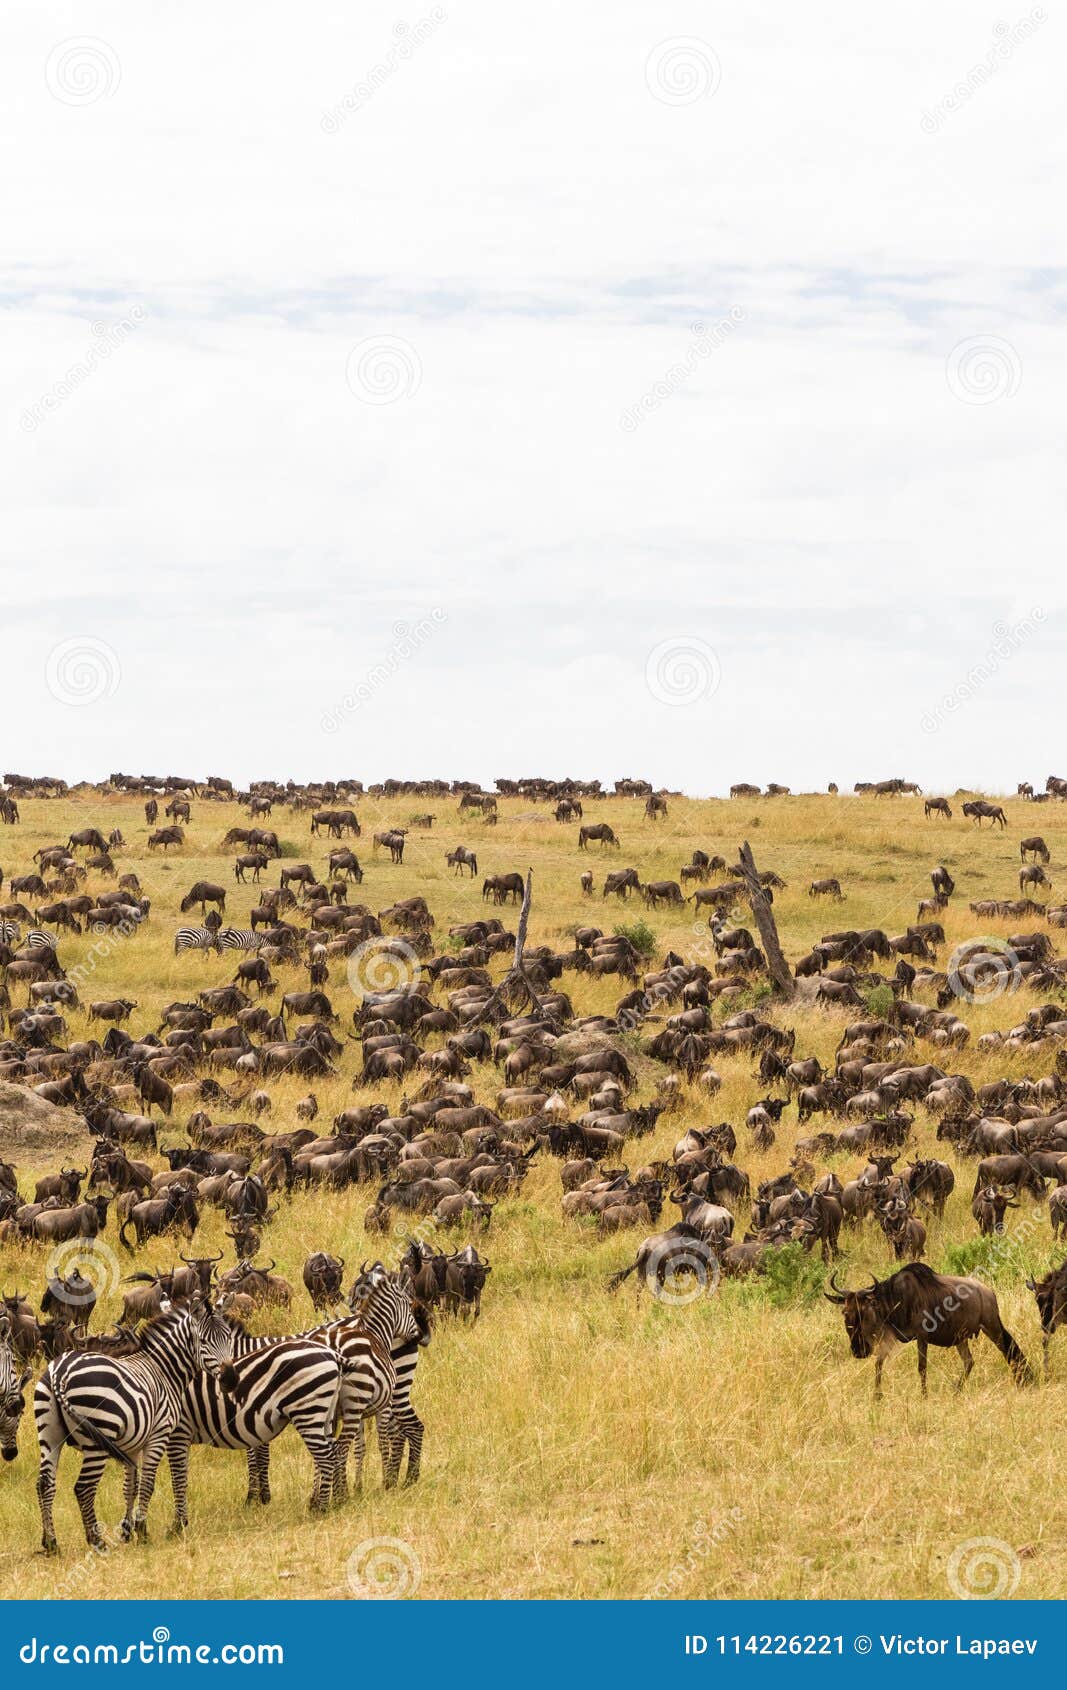 huge herds of ungulates on the serengeti plains. kenya, africa